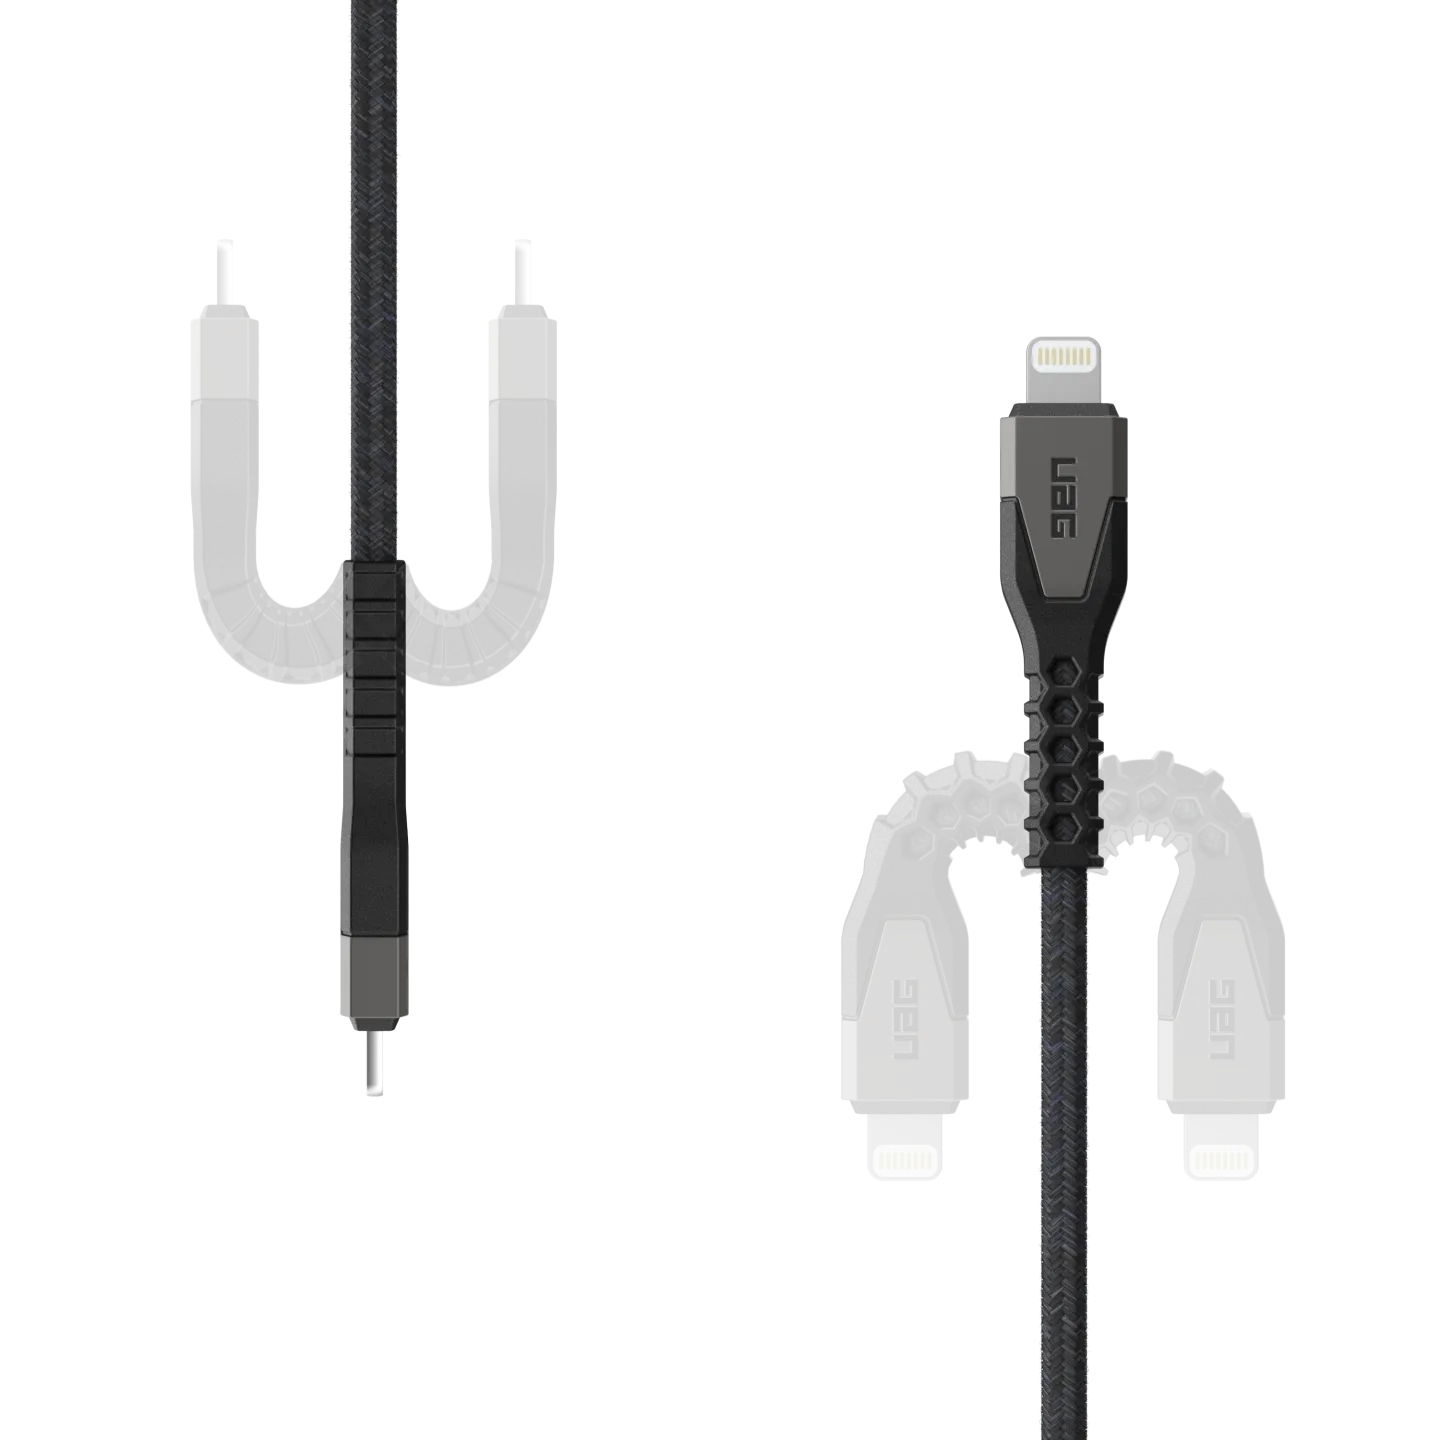 สายชาร์จ UAG รุ่น Rugged Kevlar USB C-to-Lightning Cable ความยาว 1.5 เมตร - สี Black/Gray